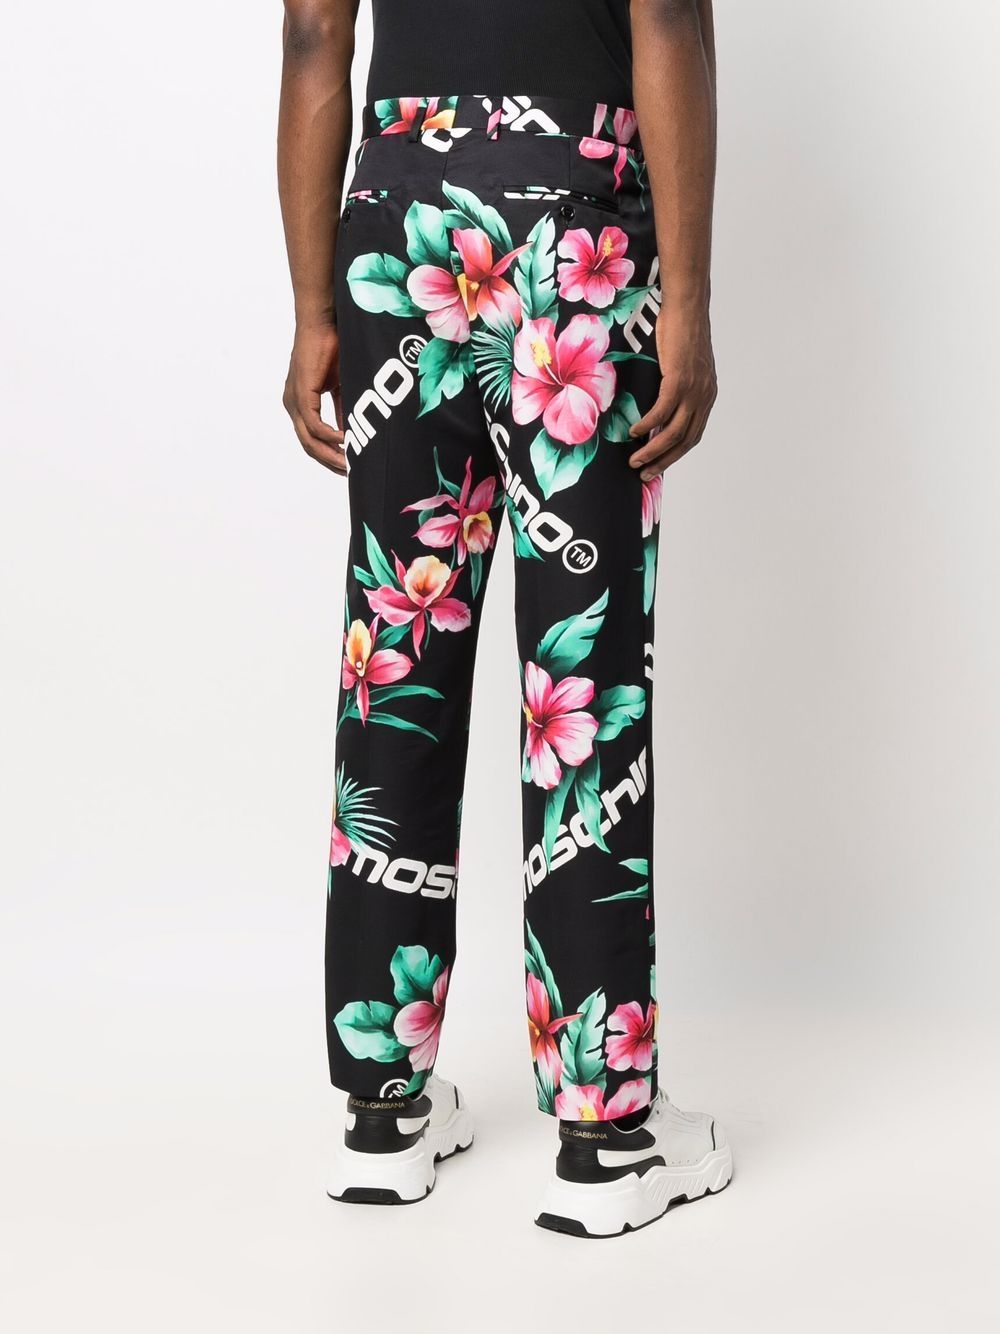 фото Moschino спортивные брюки с цветочным принтом